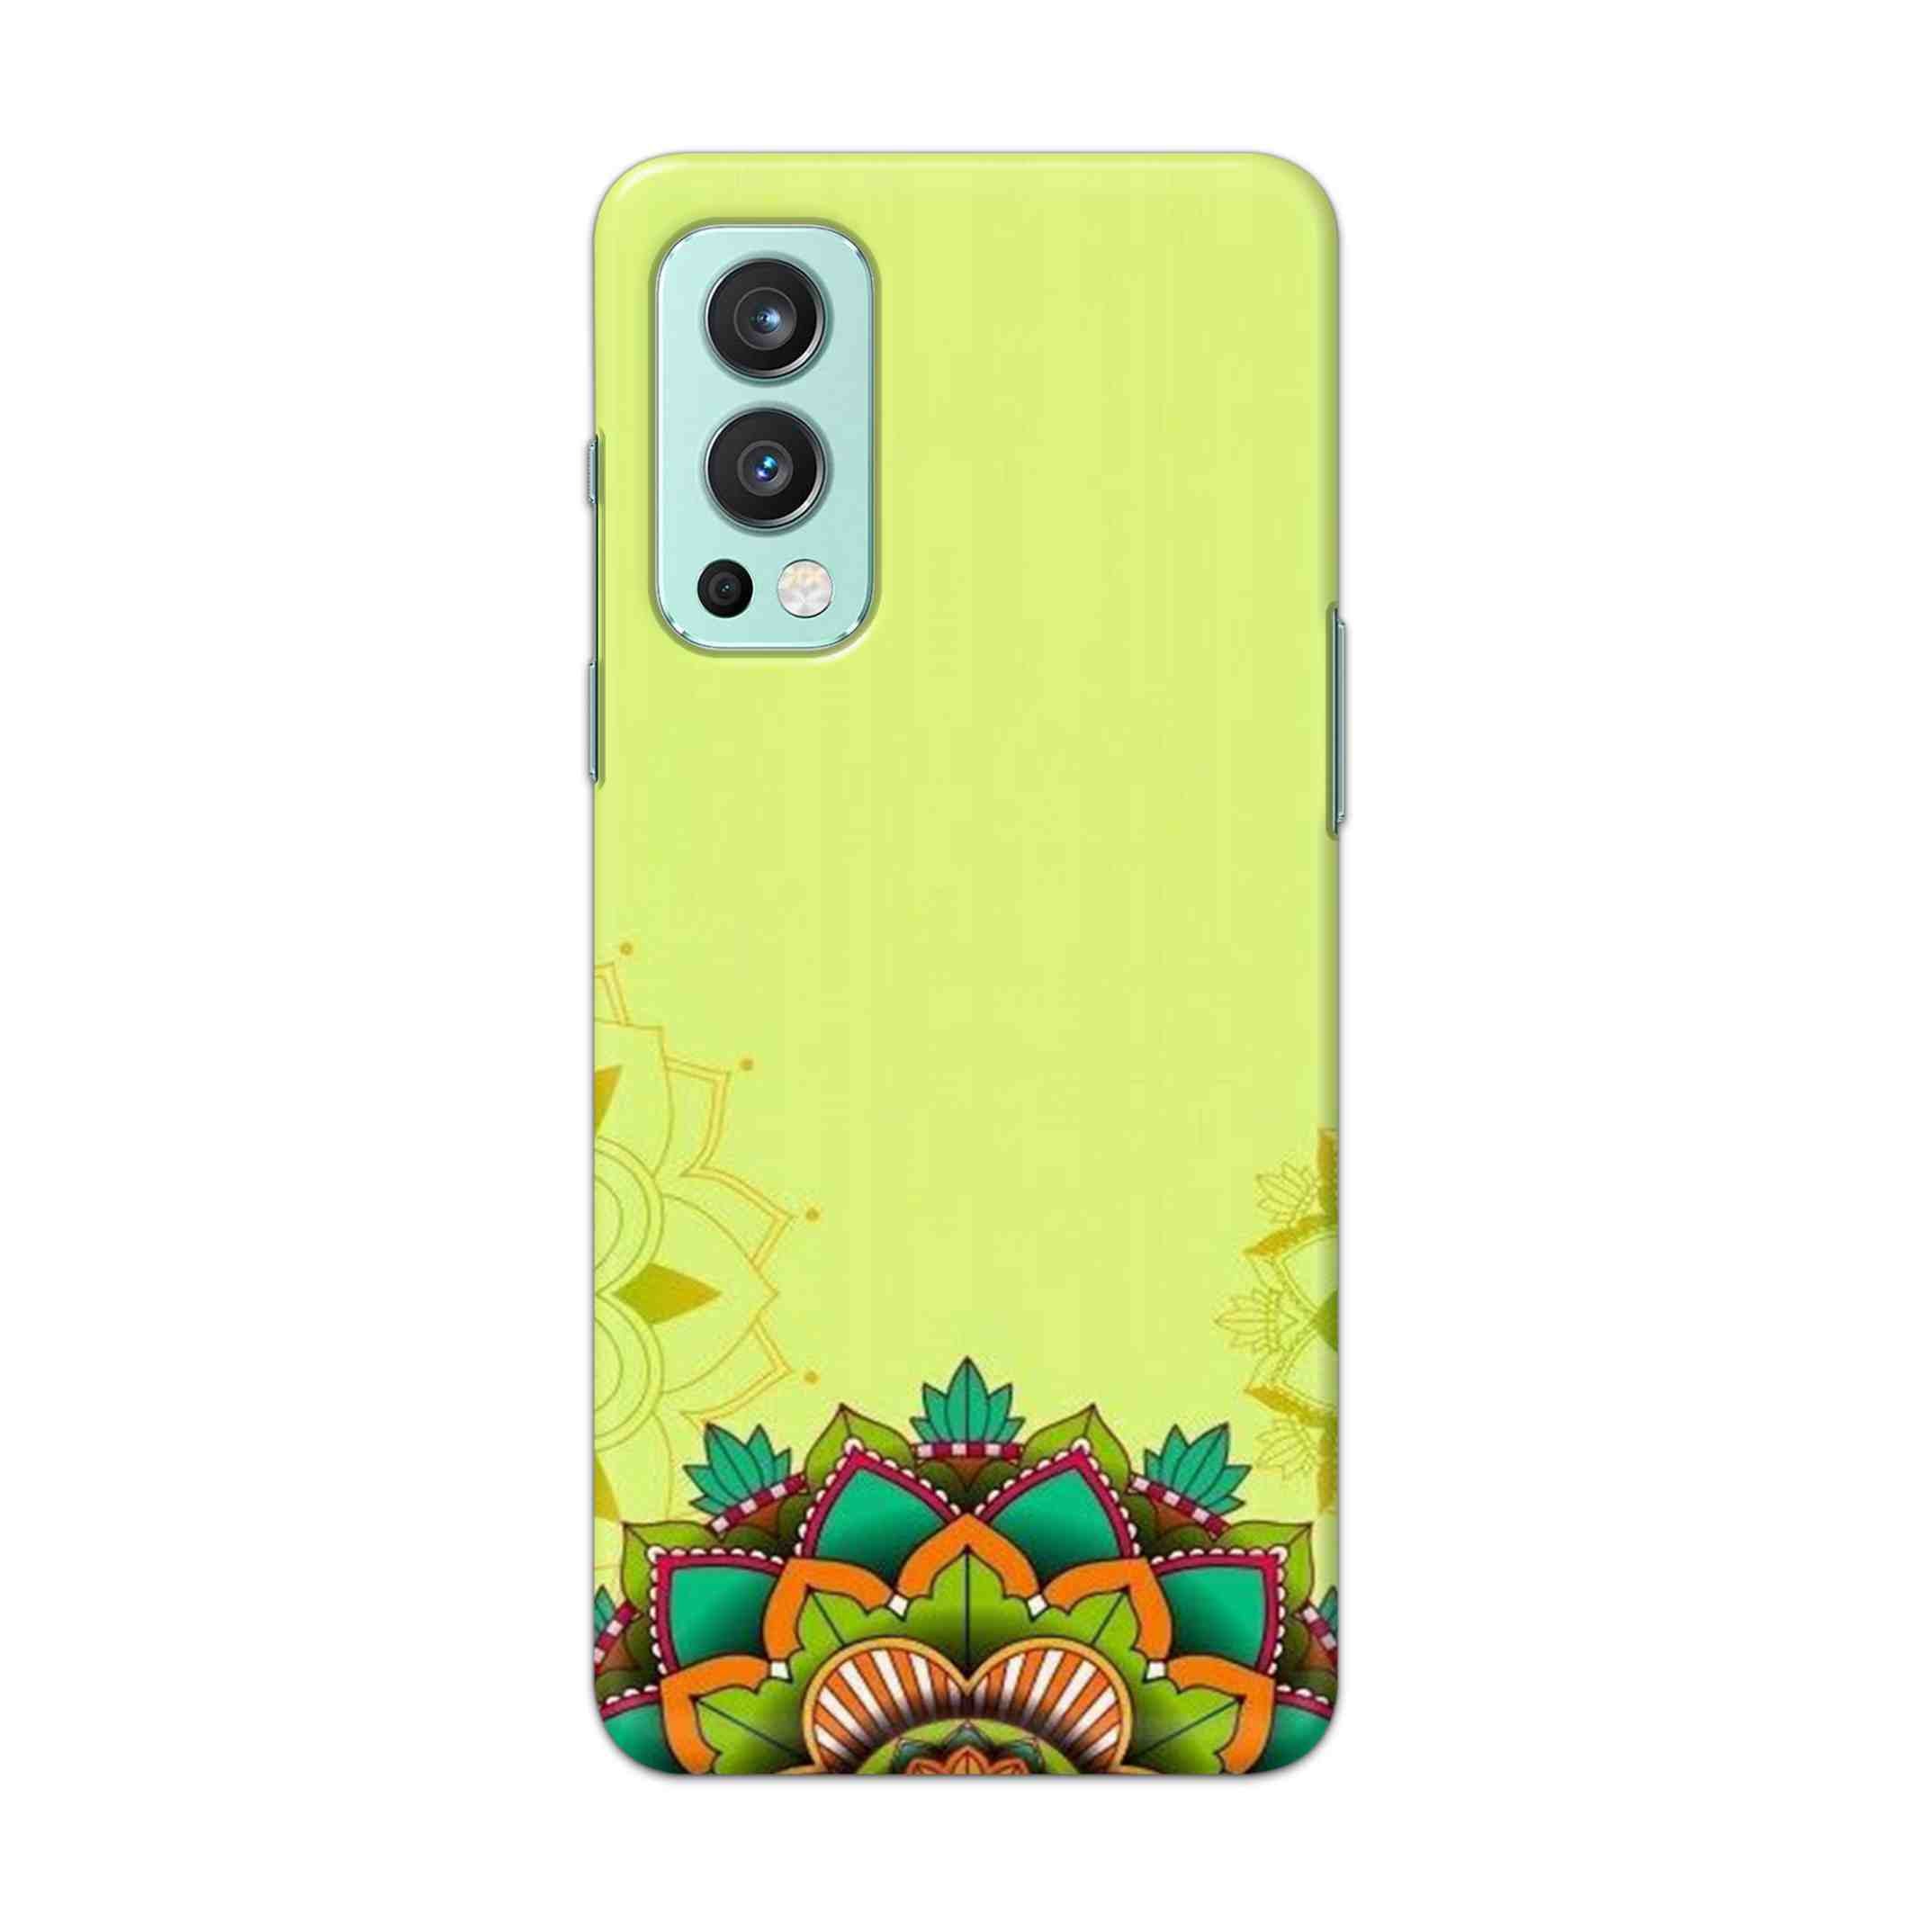 Buy Flower Mandala Hard Back Mobile Phone Case Cover For OnePlus Nord 2 5G Online